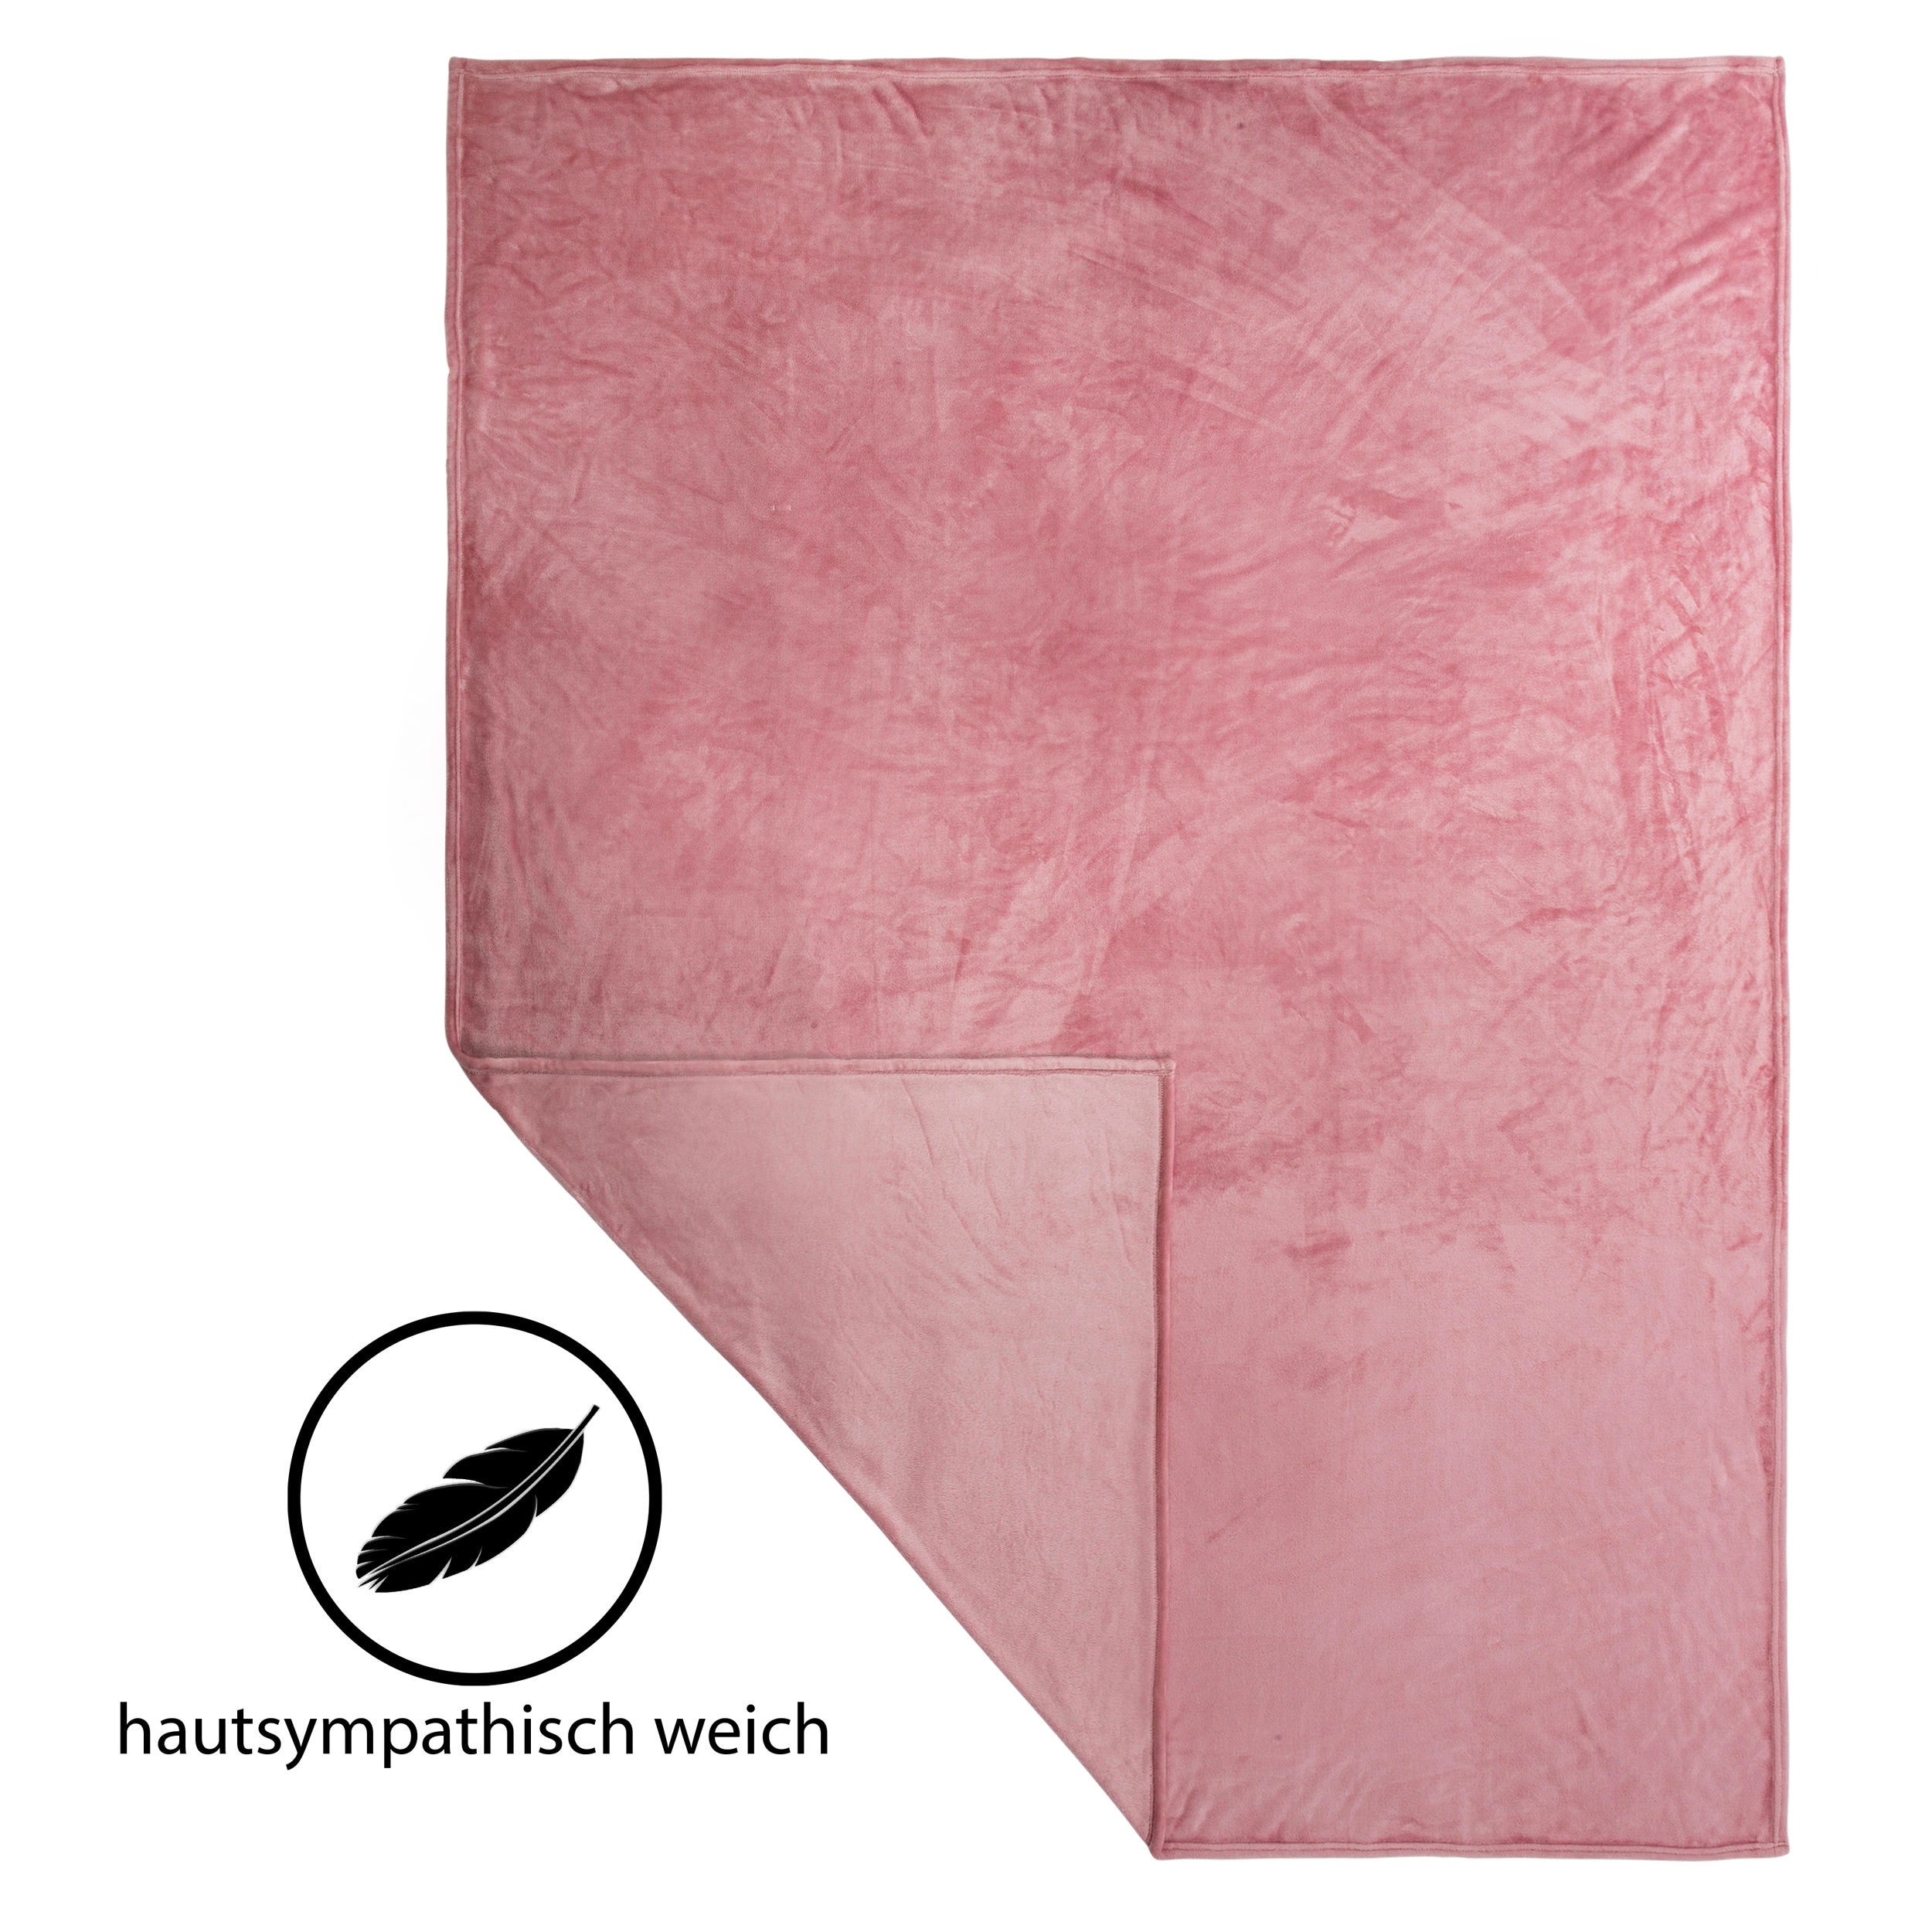 99028 Hometex Premium Textiles Cashmere Touch Kuscheldecke | Hochflor-Flausch Sofadecke | Kuschelig weich & hautsympatisch | 150 x 200 cm Altrosa